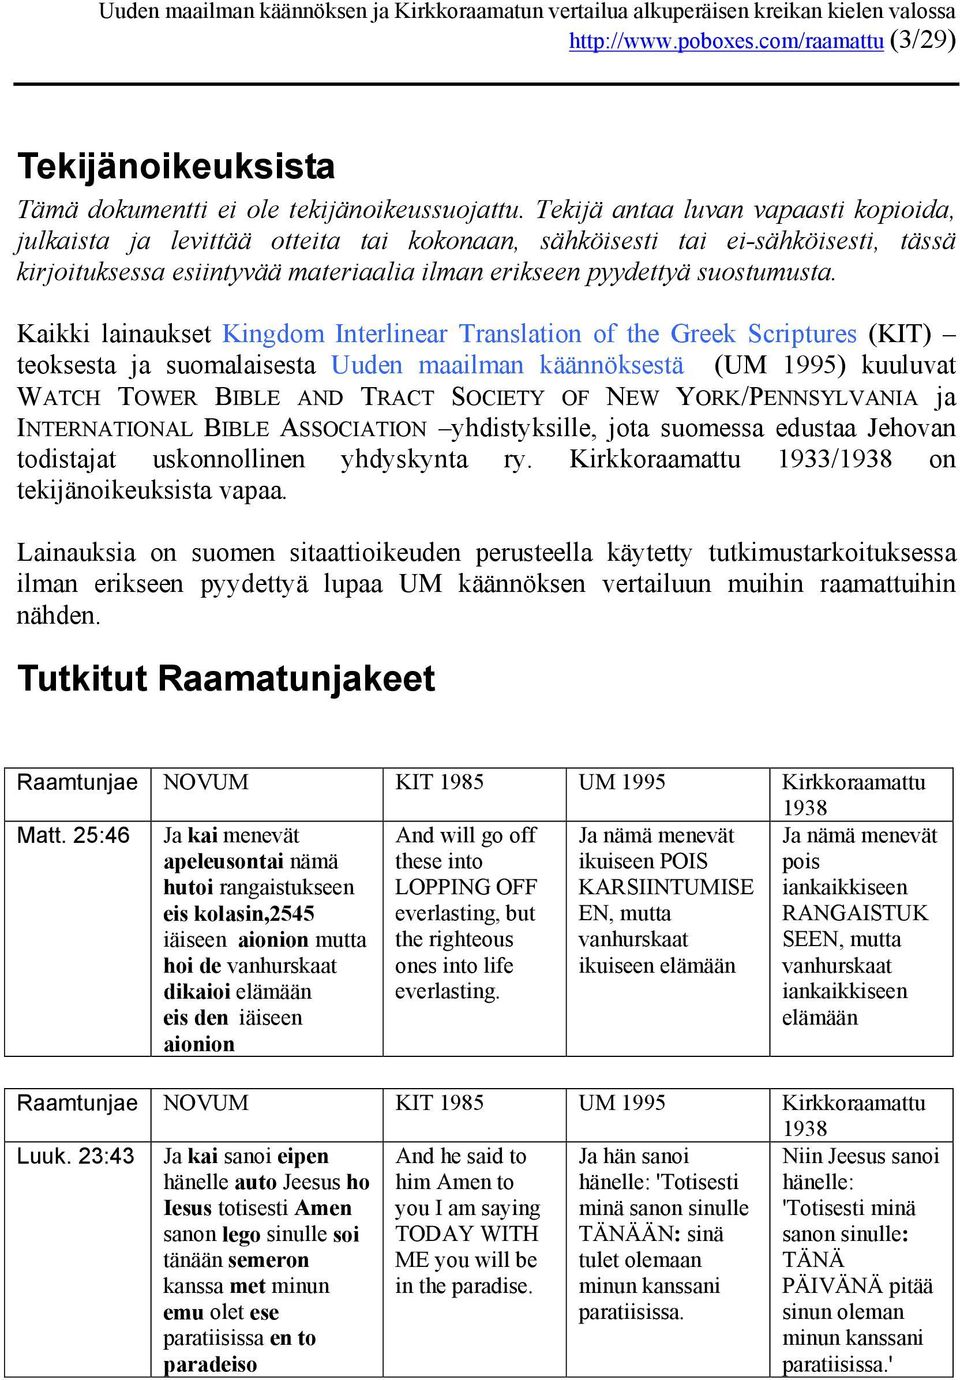 Kaikki lainaukset Kingdom Interlinear Translation of the Greek Scriptures (KIT) teoksesta ja suomalaisesta Uuden maailman käännöksestä (UM 1995) kuuluvat WATCH TOWER BIBLE AND TRACT SOCIETY OF NEW